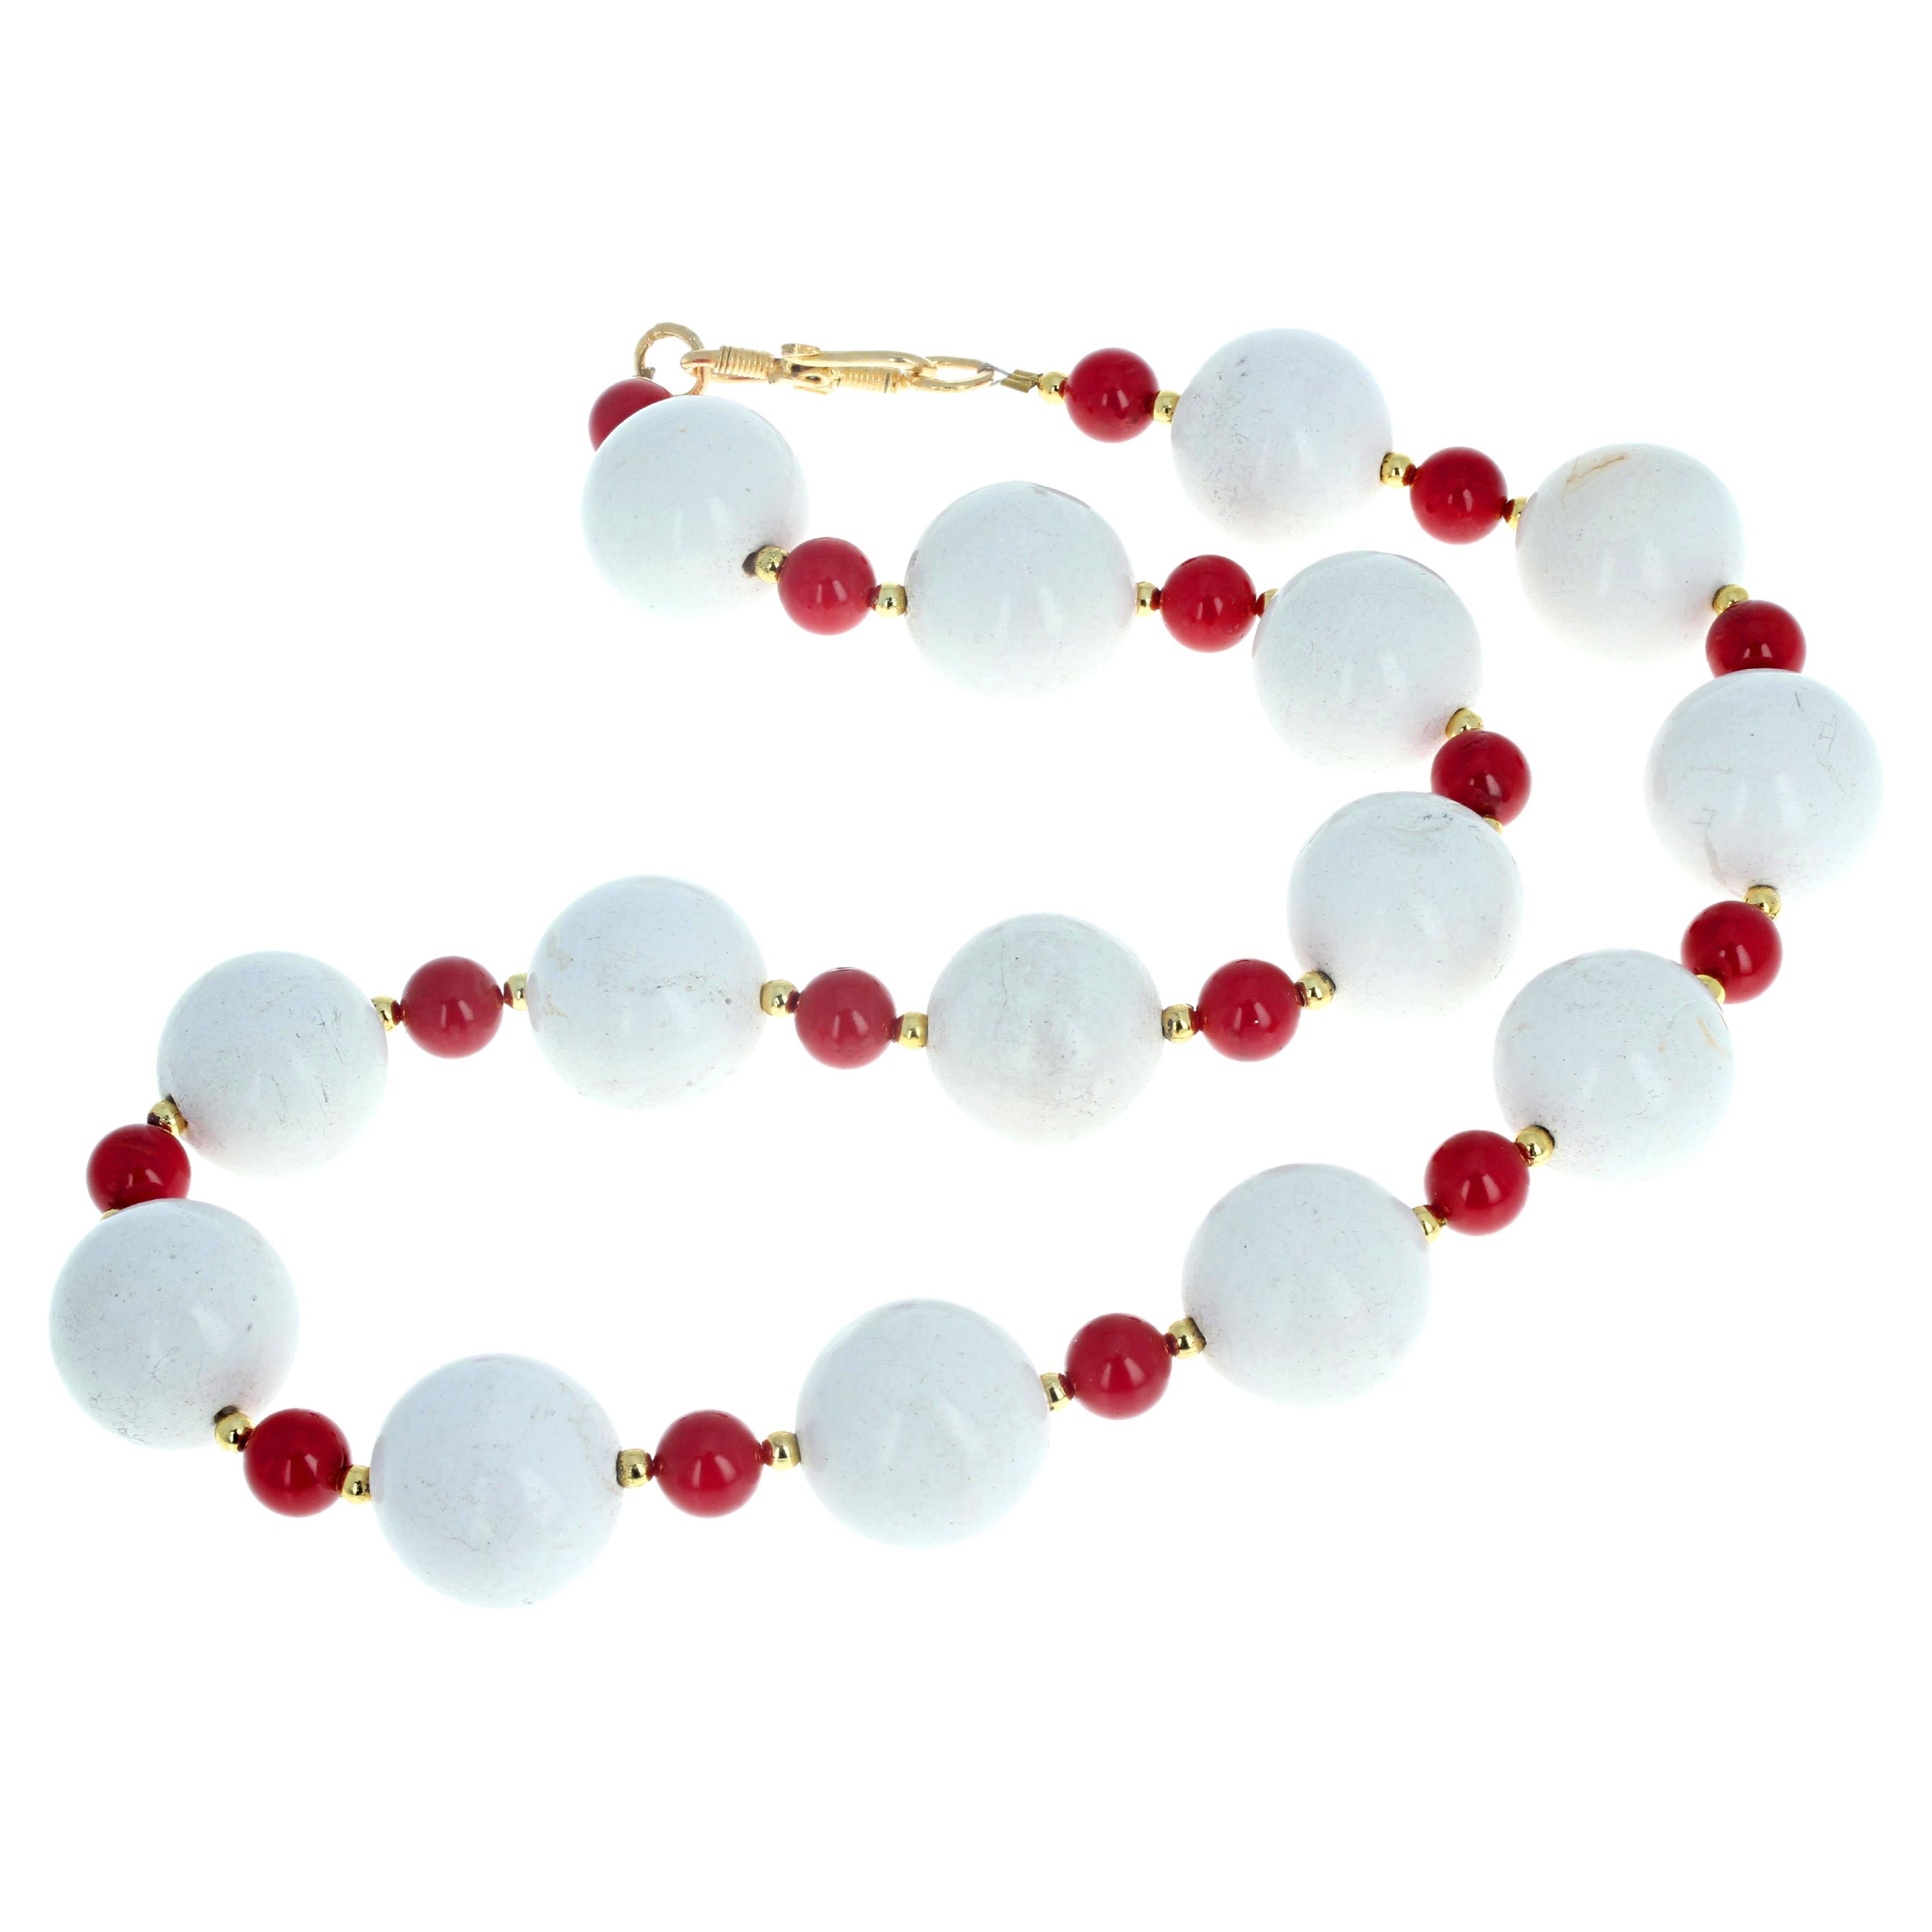 Hübsche Statement-Halskette aus weißem, echtem, leicht natürlichem Magnesit (ca. 18 mm), ergänzt durch eine wunderschöne, hochglanzpolierte, leuchtend rote, runde Koralle (ca. 8 mm) in dieser 19 1/2 Zoll langen Halskette.  Der Verschluss ist ein